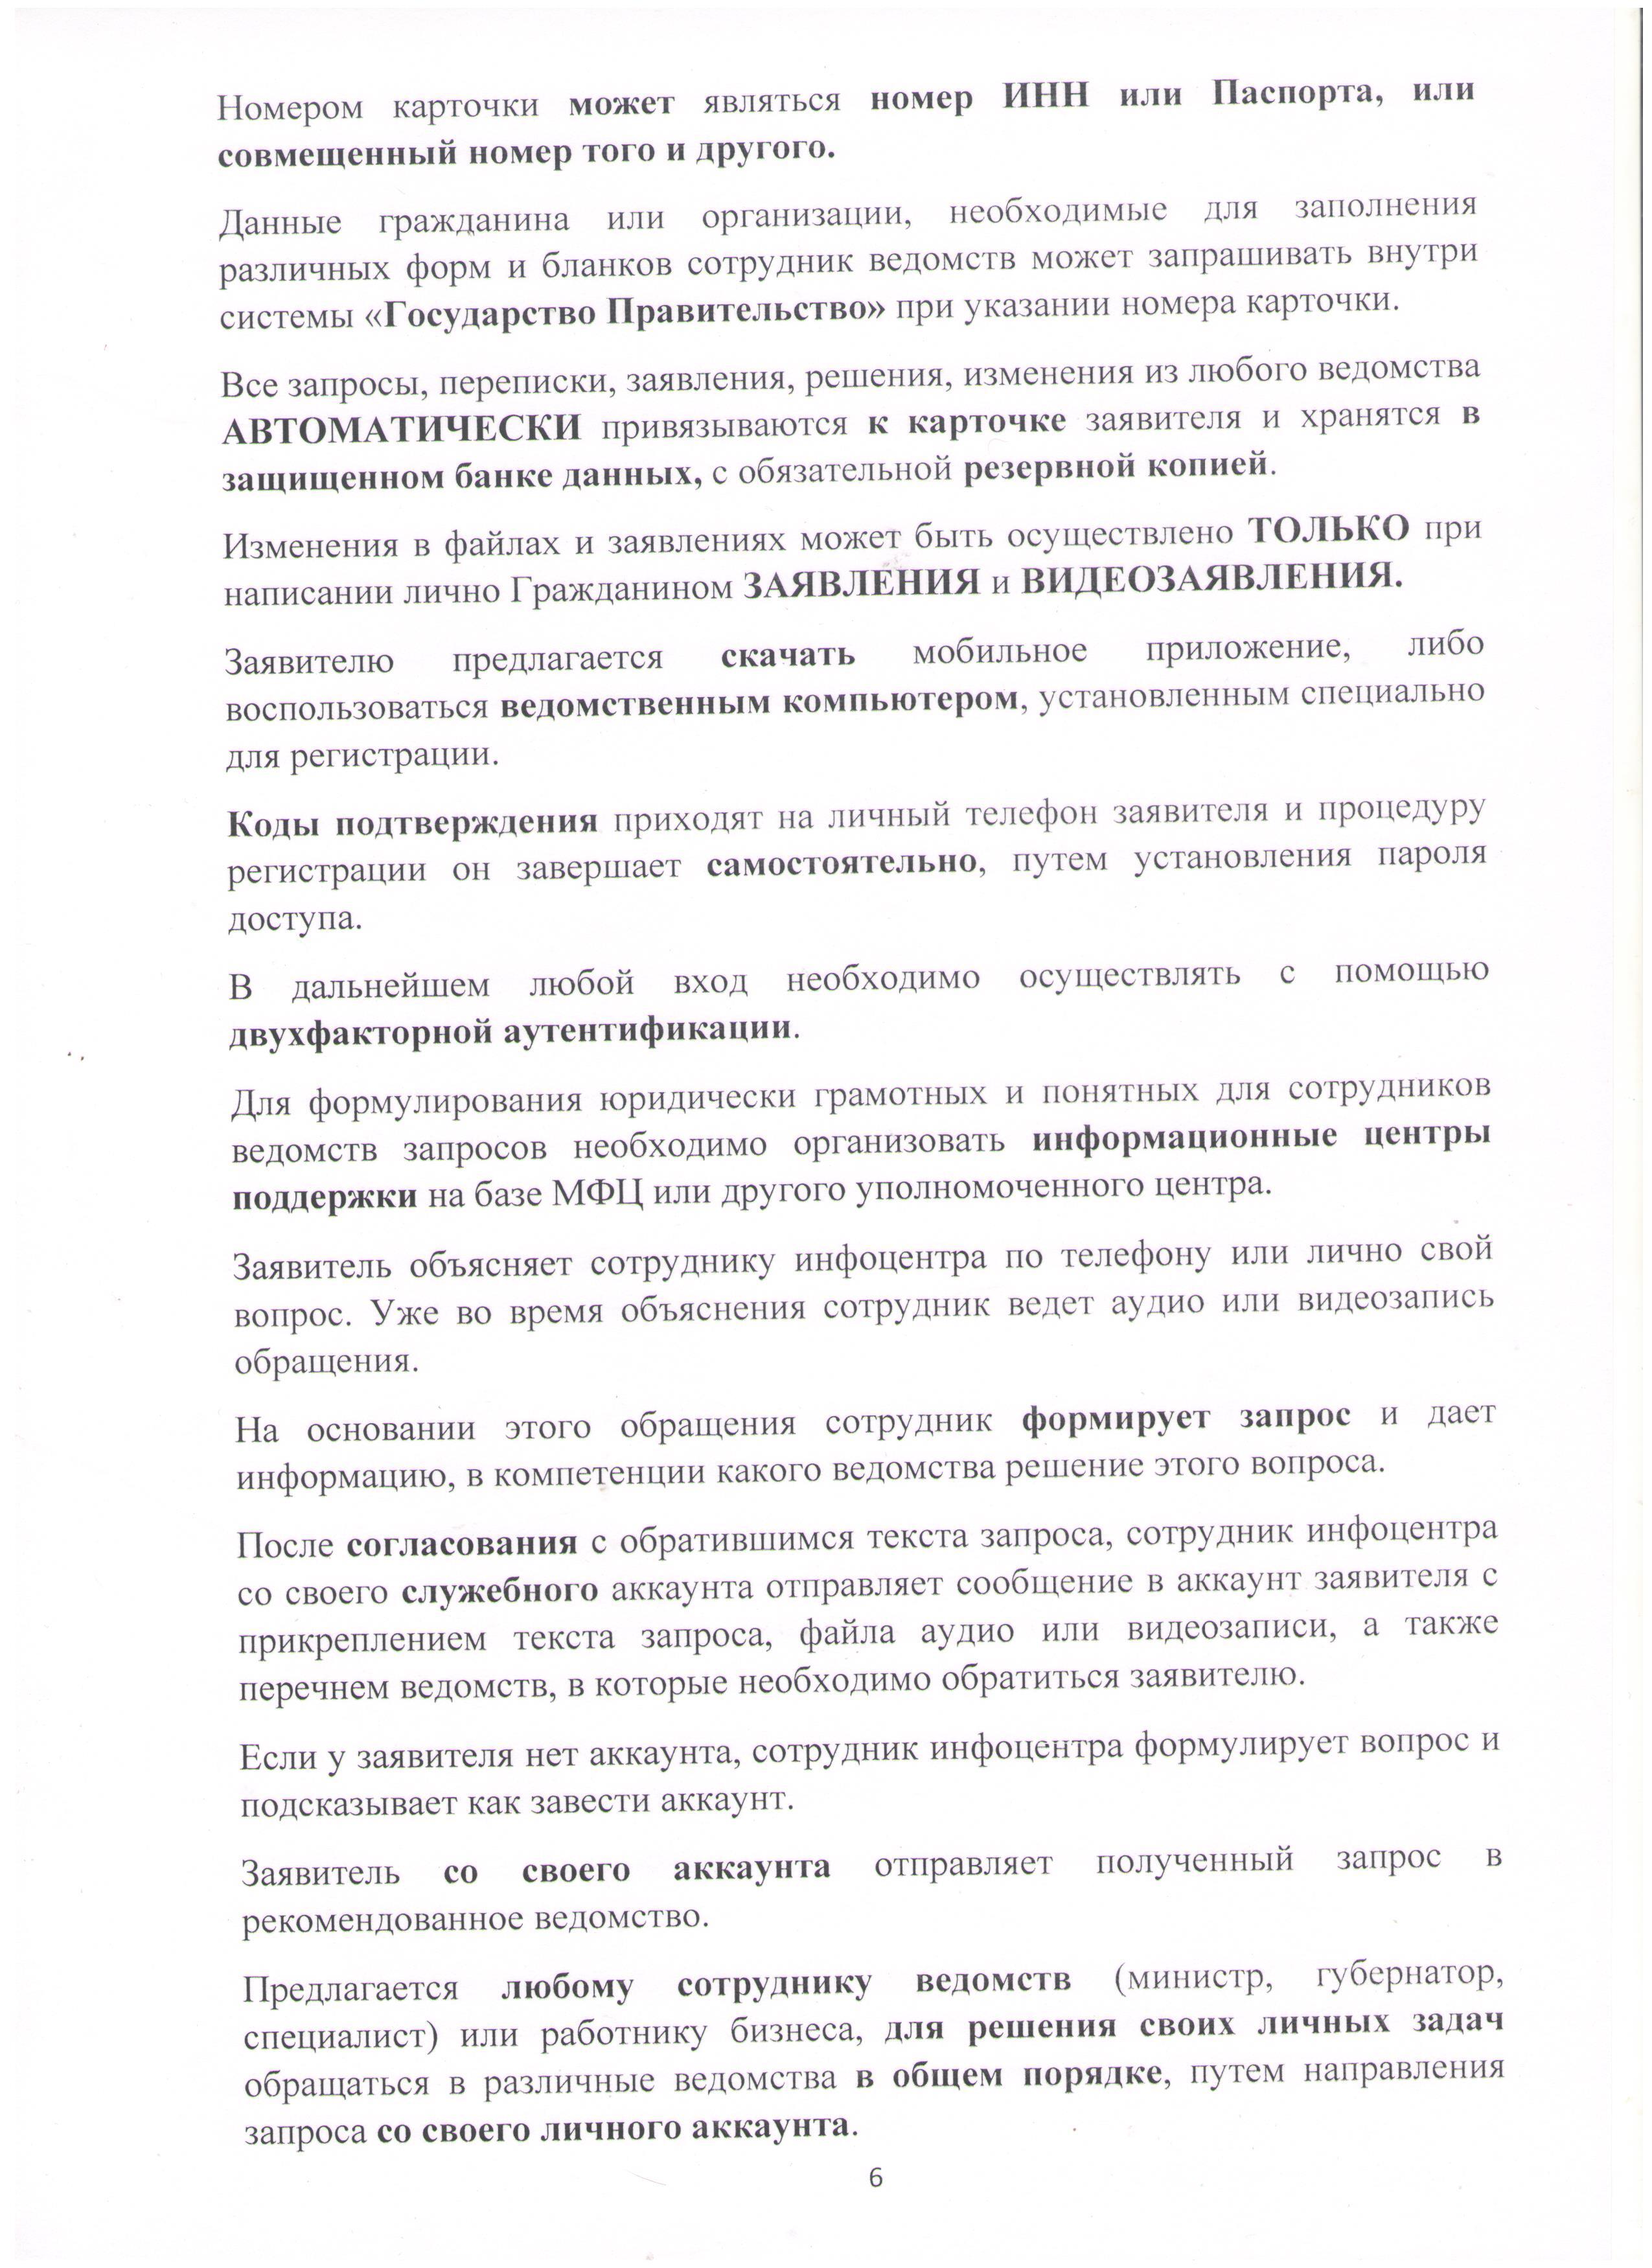 Открытое письмо президенту РФ Лист 6